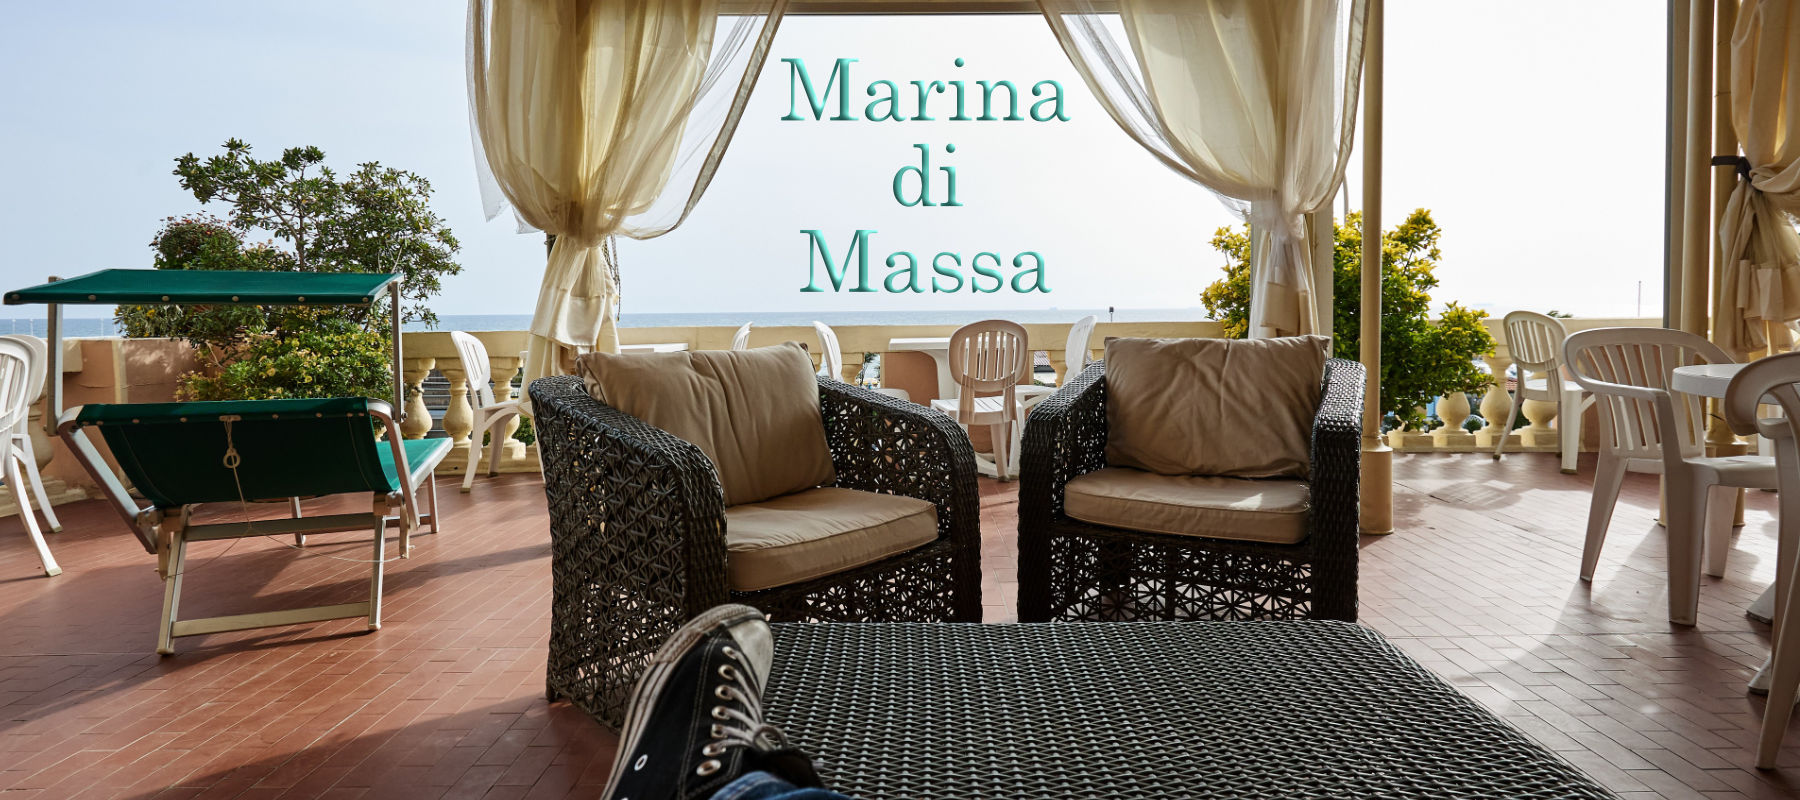 Titel Marina di Massa